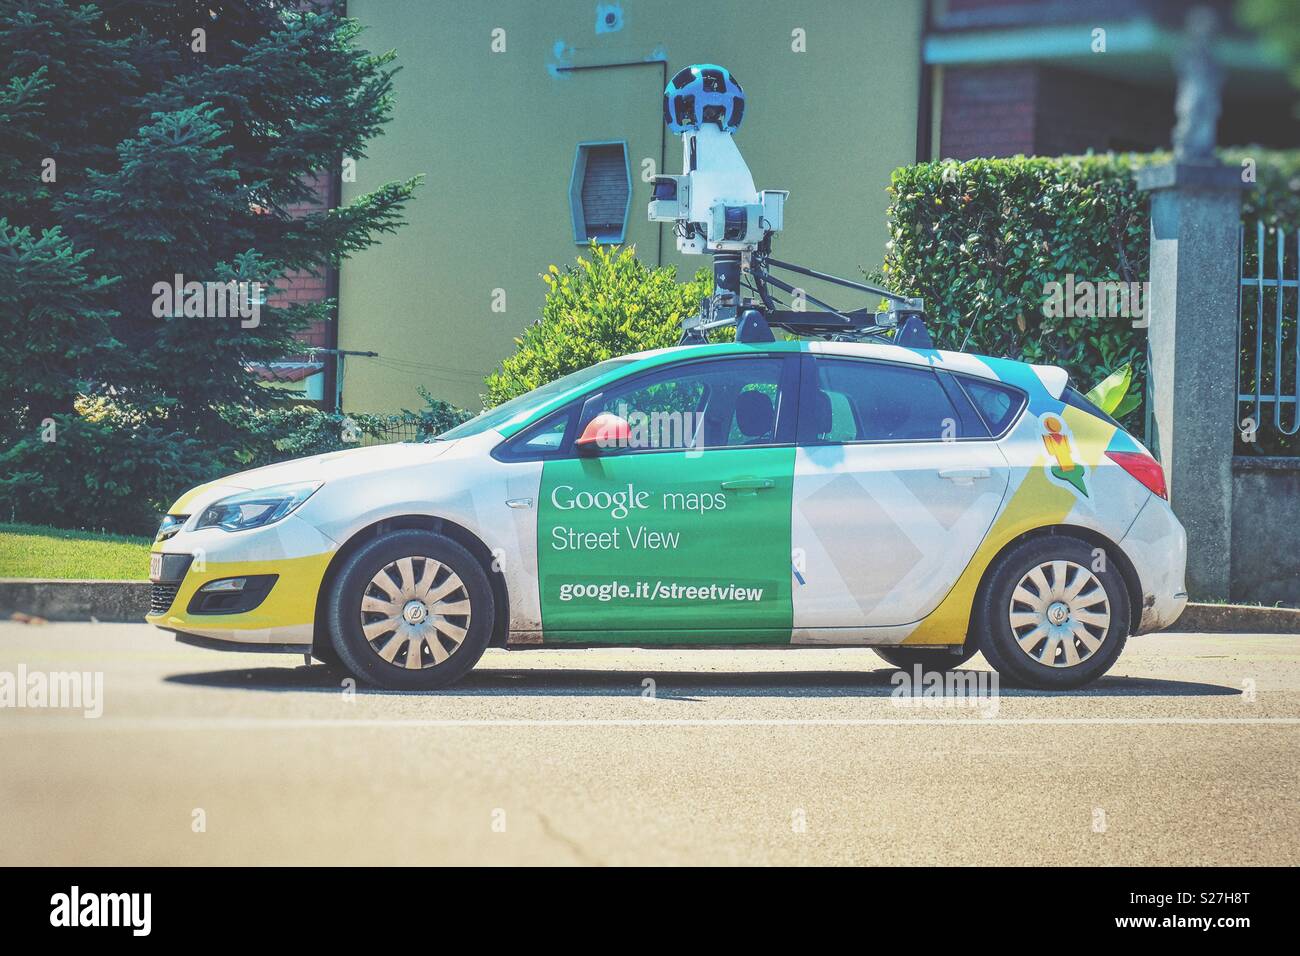 Google mapping Auto und Kamera für Streetview 360 Apps und Karten  Stockfotografie - Alamy